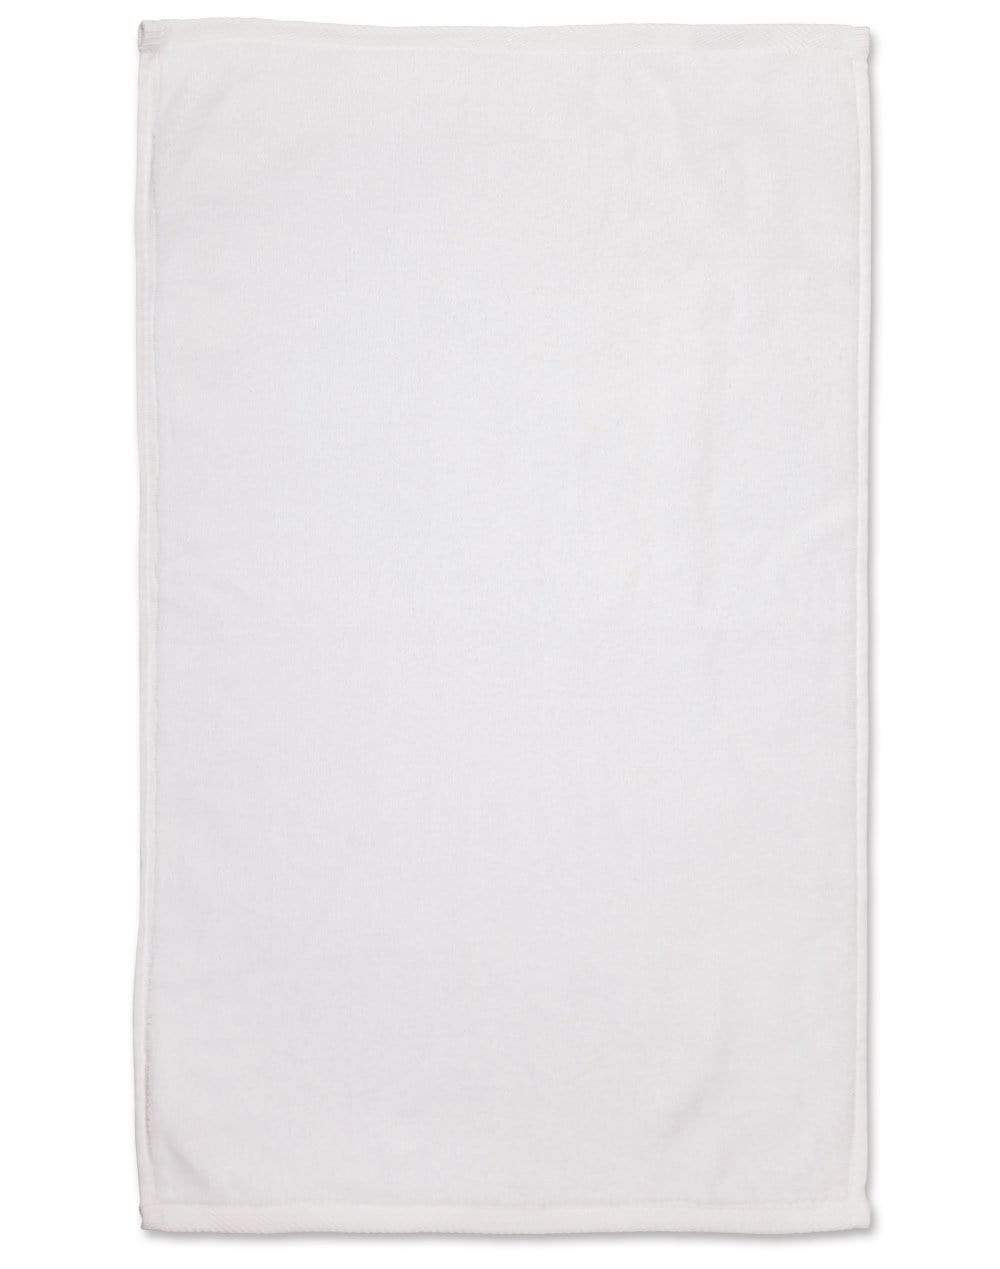 Golf Towel TW01 Work Wear Australian Industrial Wear 38cm x 65cm White 